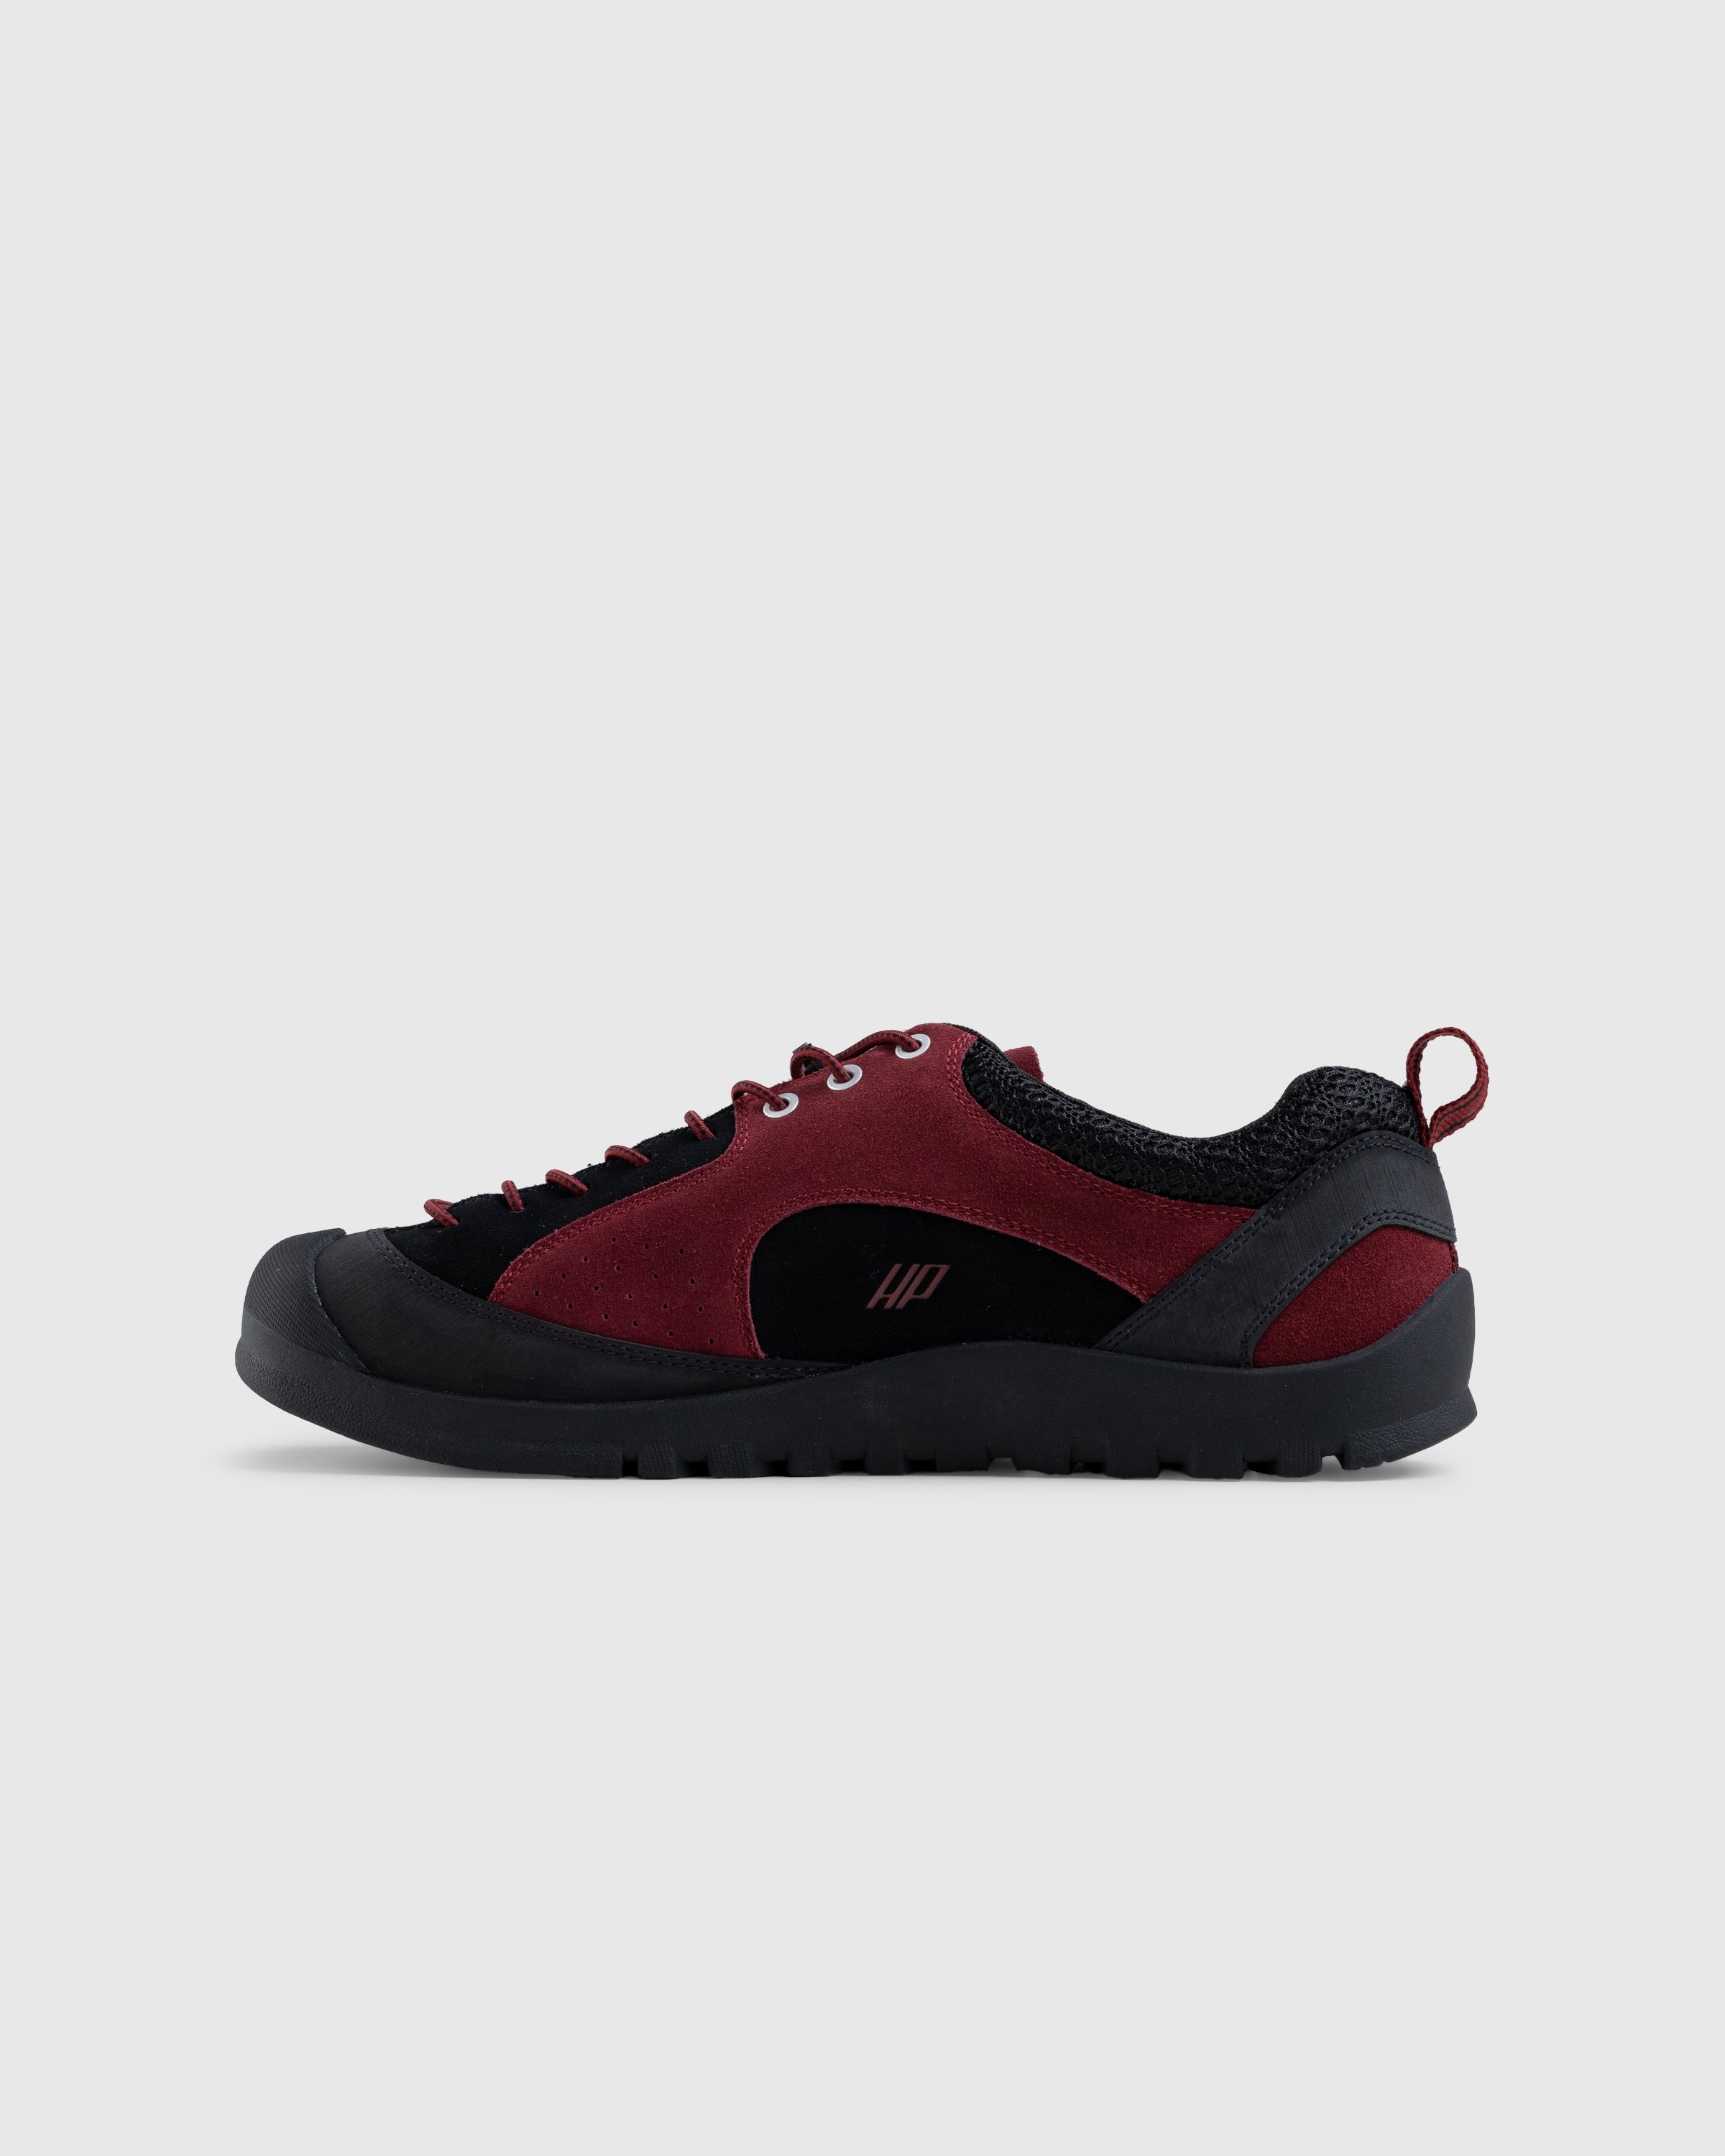 Keen x Hiking Patrol - Jasper Rocks SP Phantasmal Red - Footwear - Red - Image 2